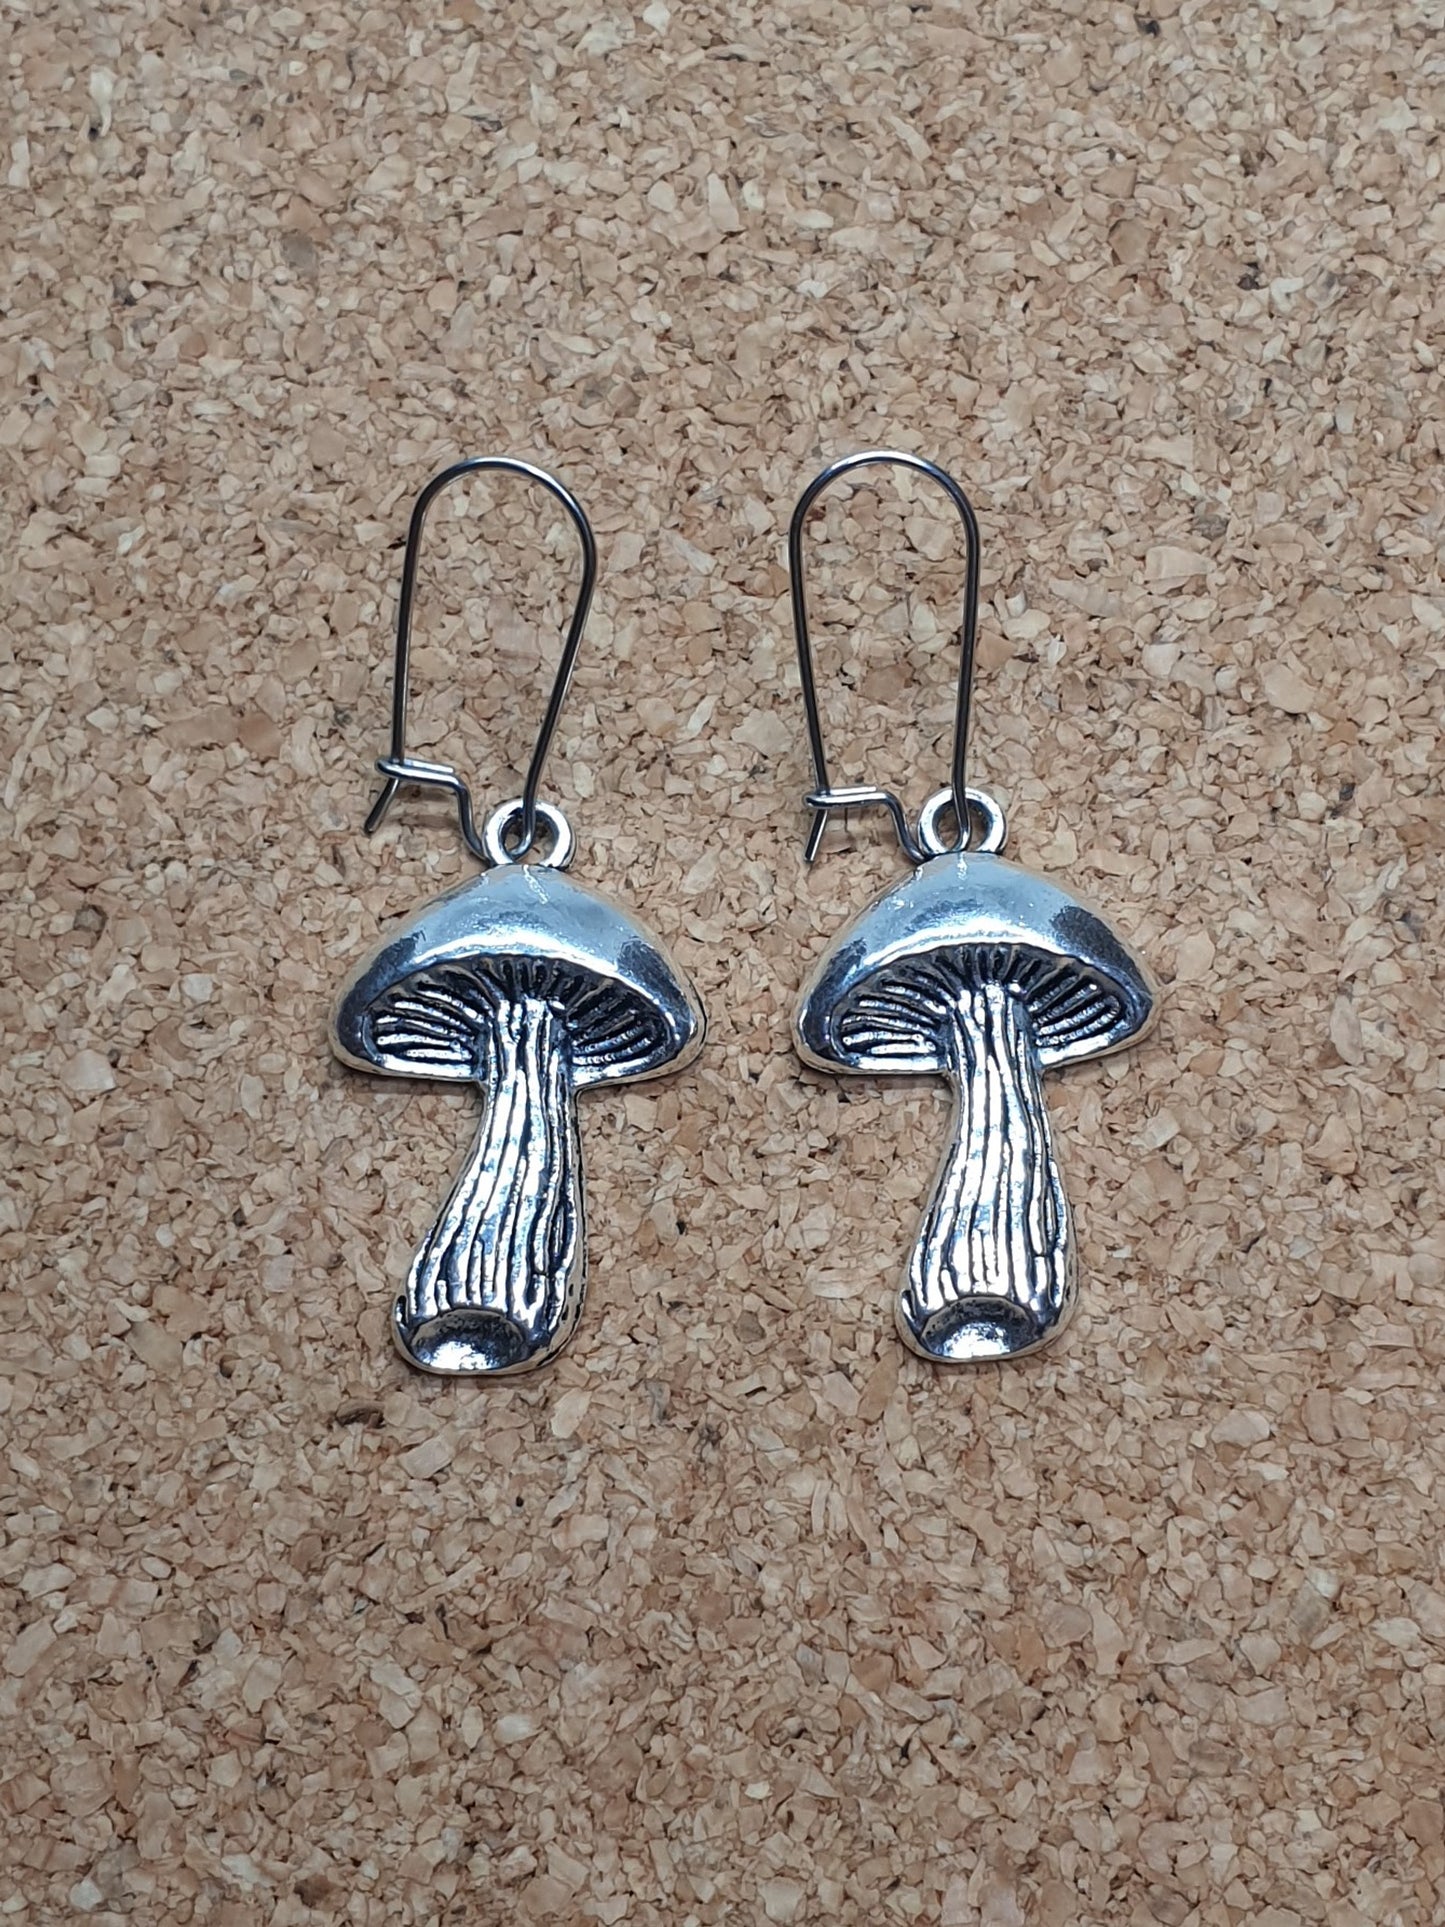 Gilled Mushrooms earrings